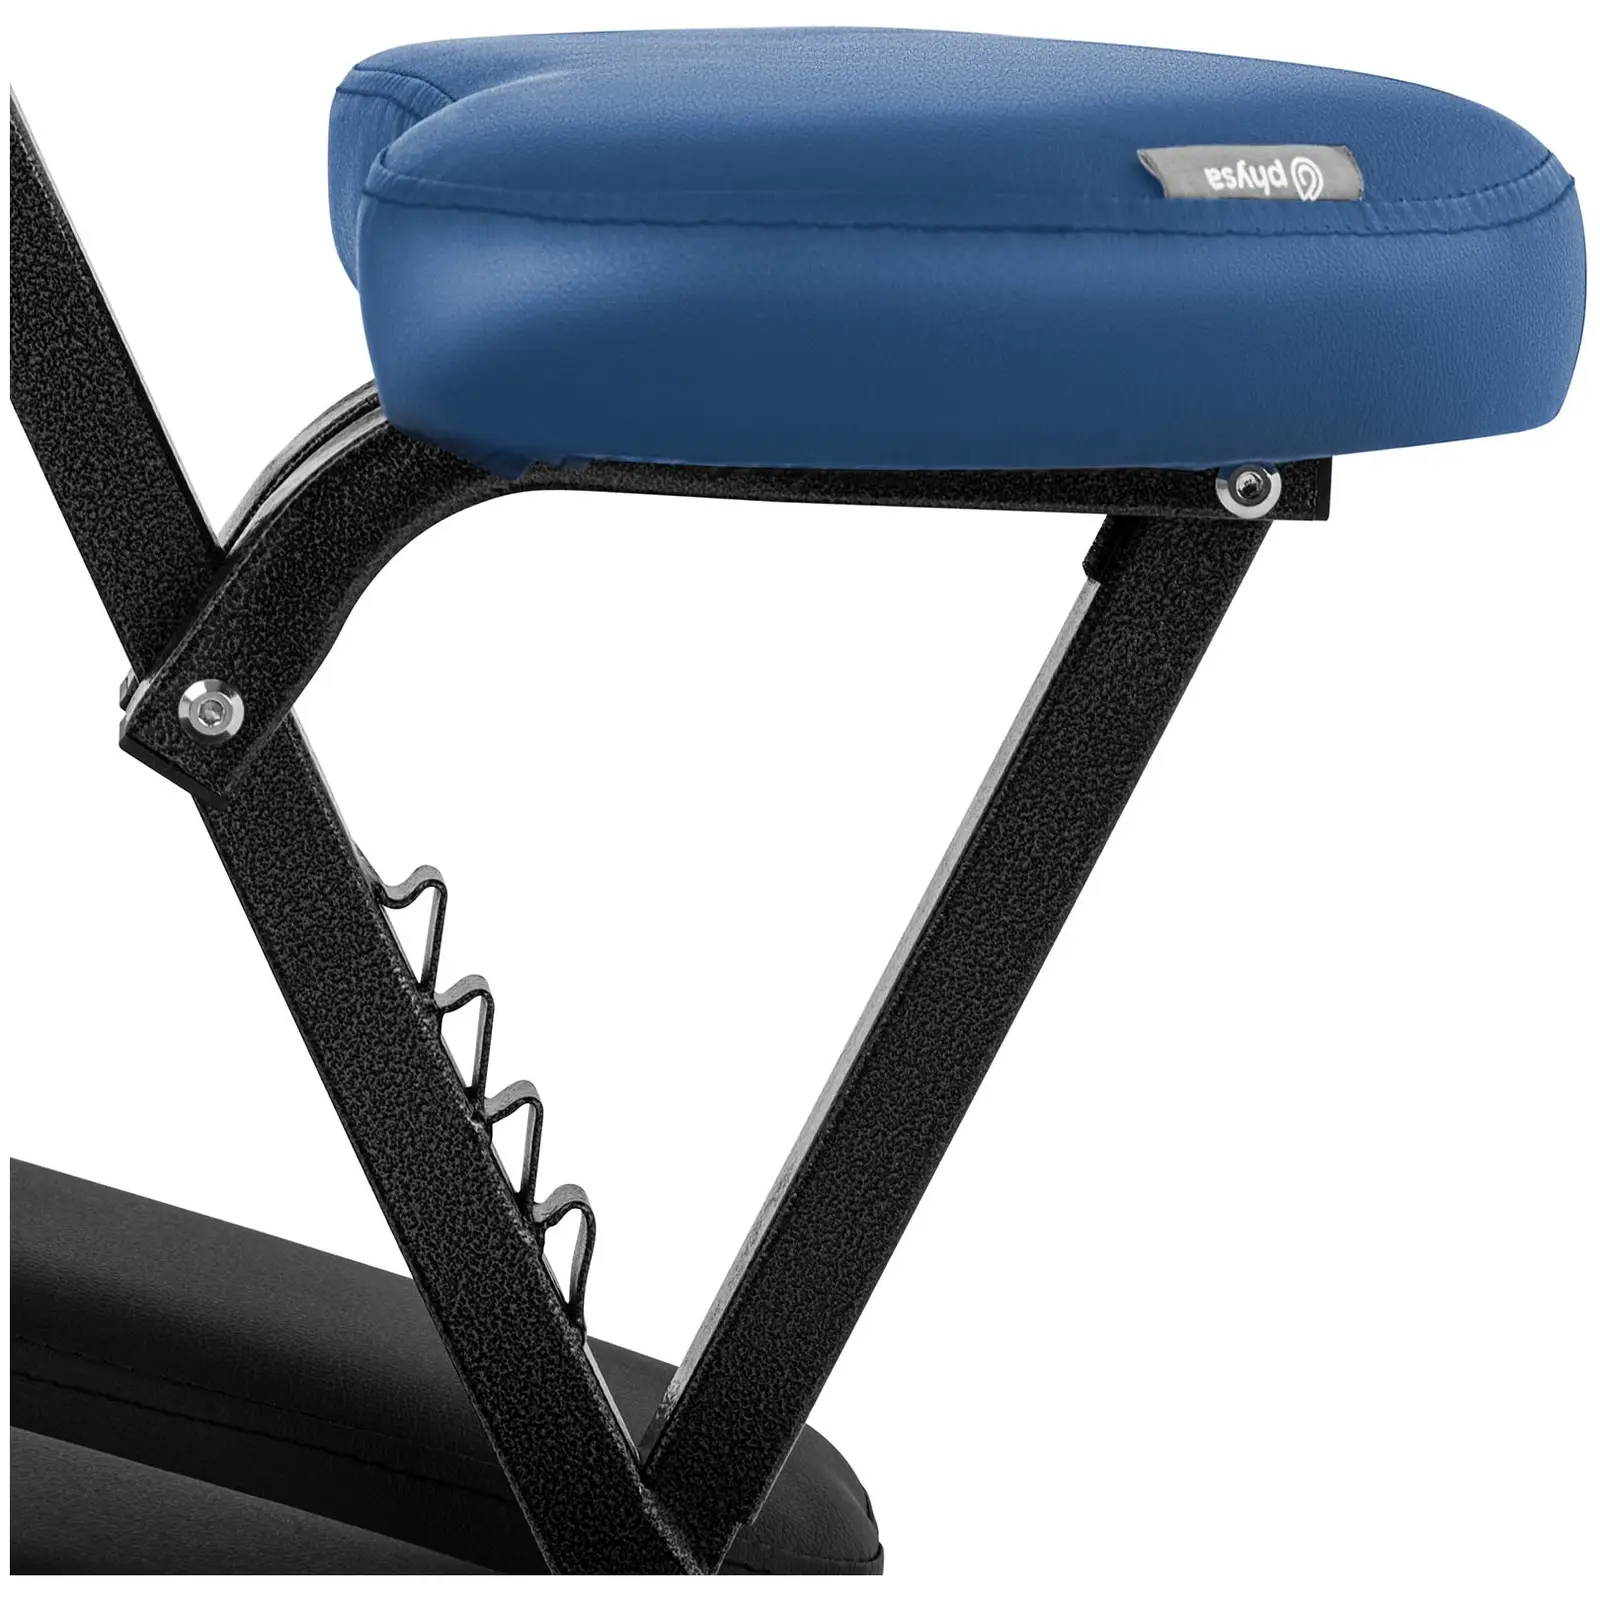 Masážní židle -  130 kg - modrá barva